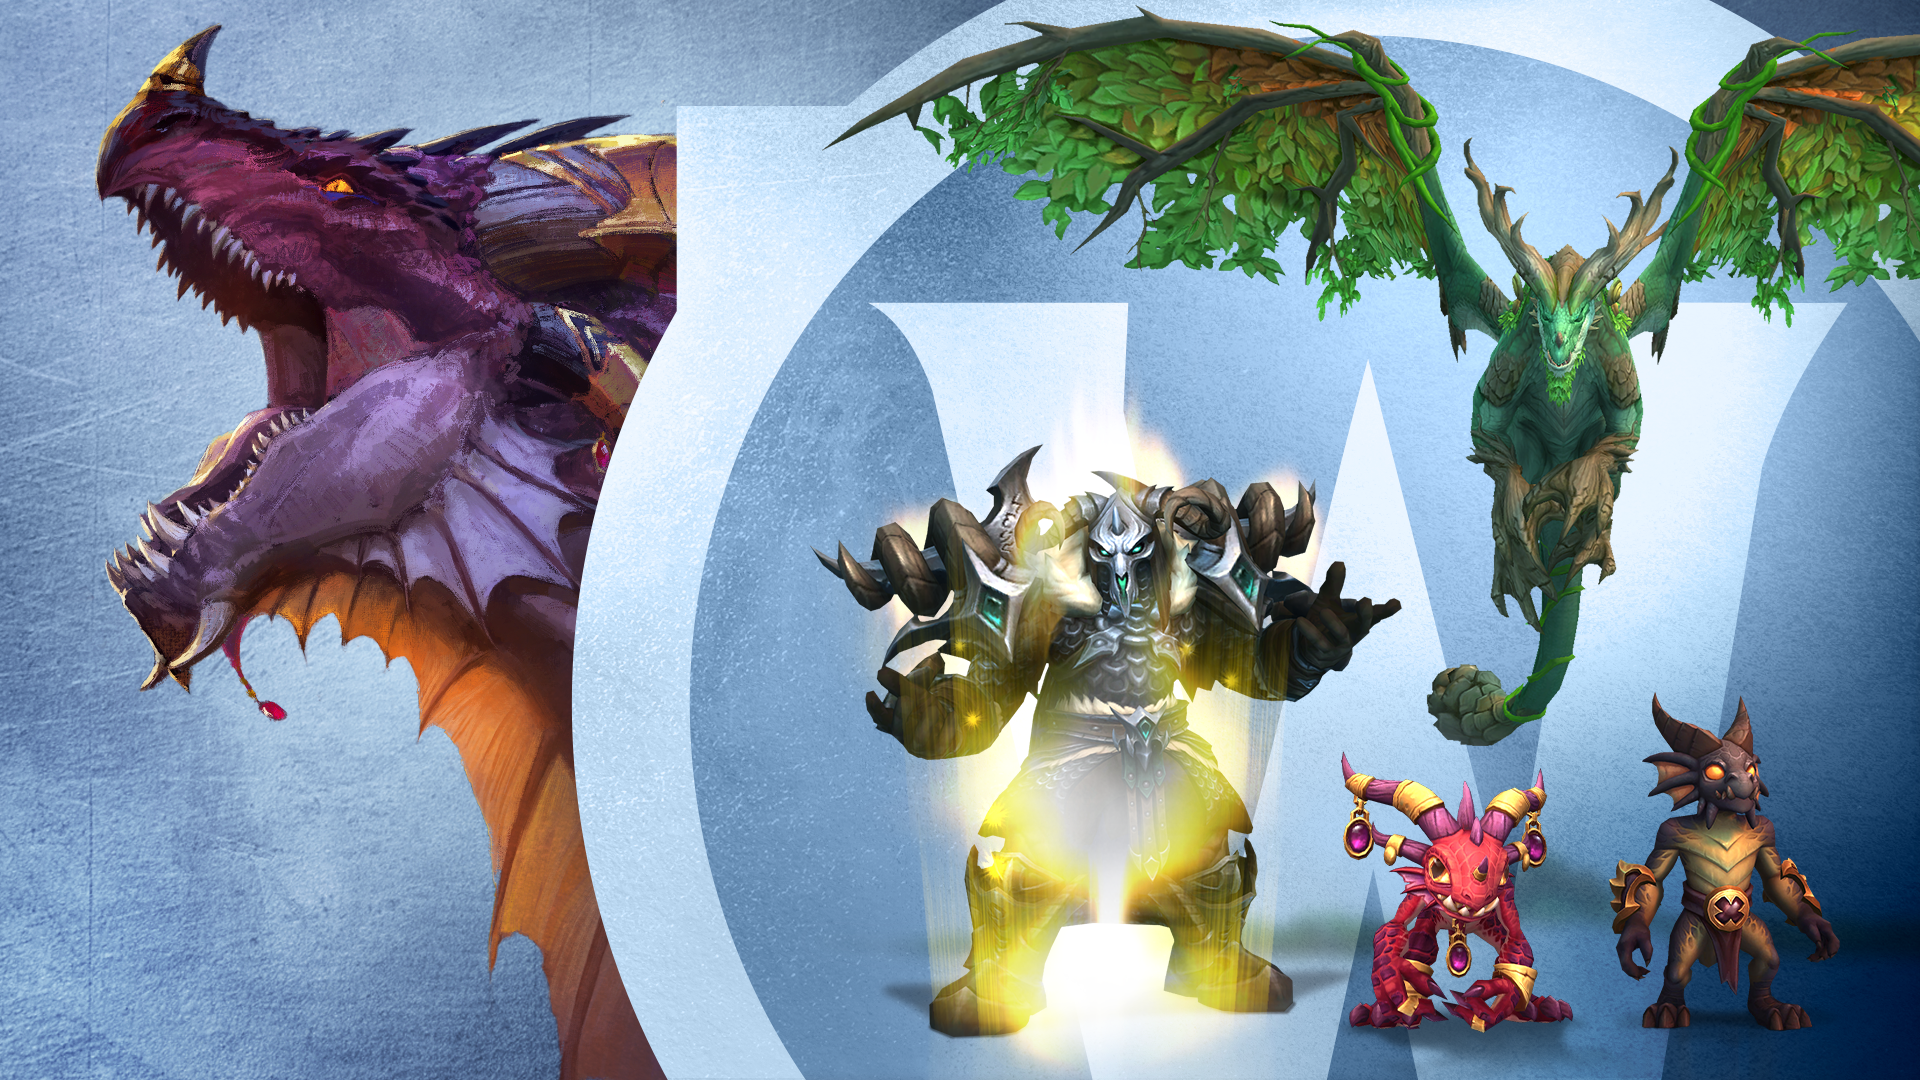 World Of Warcraft: Dragonflight Heroic Edition: Incluye todo lo que trae la Base Edition más la montura voladora Tejesueños enmarañado, la mascota Murkastrasza, y acceso instantáneo a una subida de personaje a nivel de Dragonflight (nivel 60) para que tu personaje esté listo para sus aventuras en las Islas Dragón.